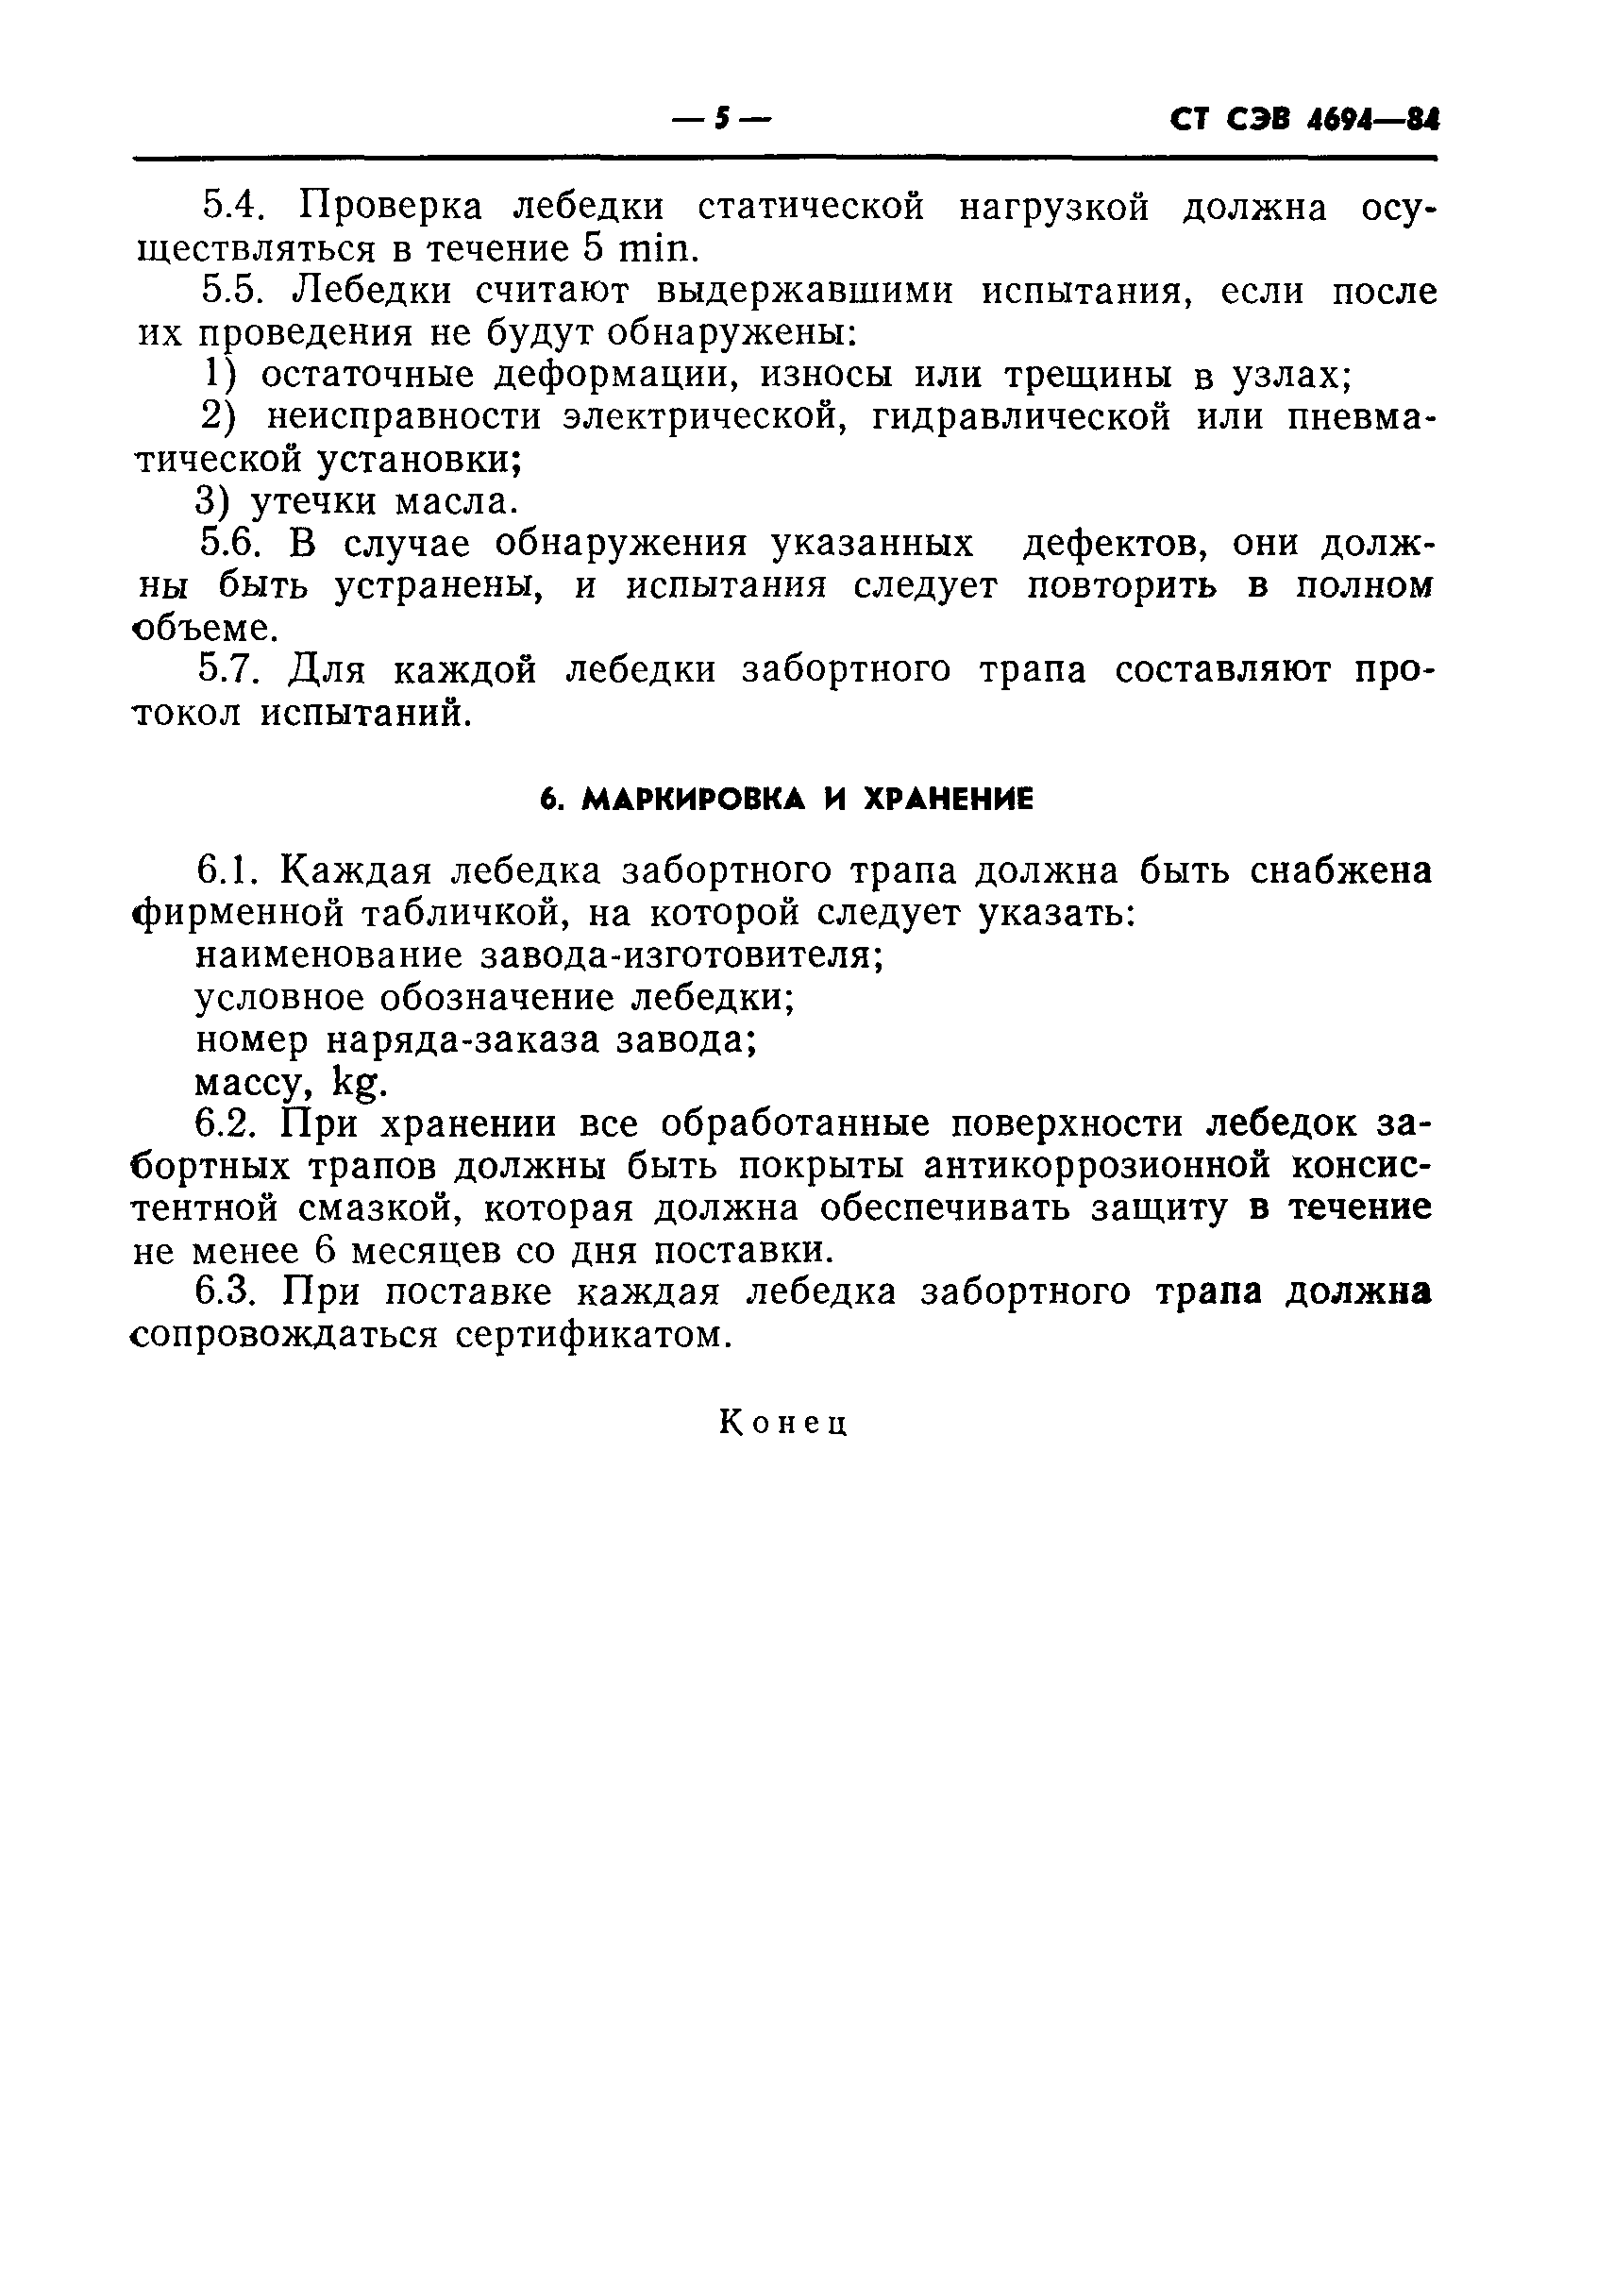 СТ СЭВ 4694-84